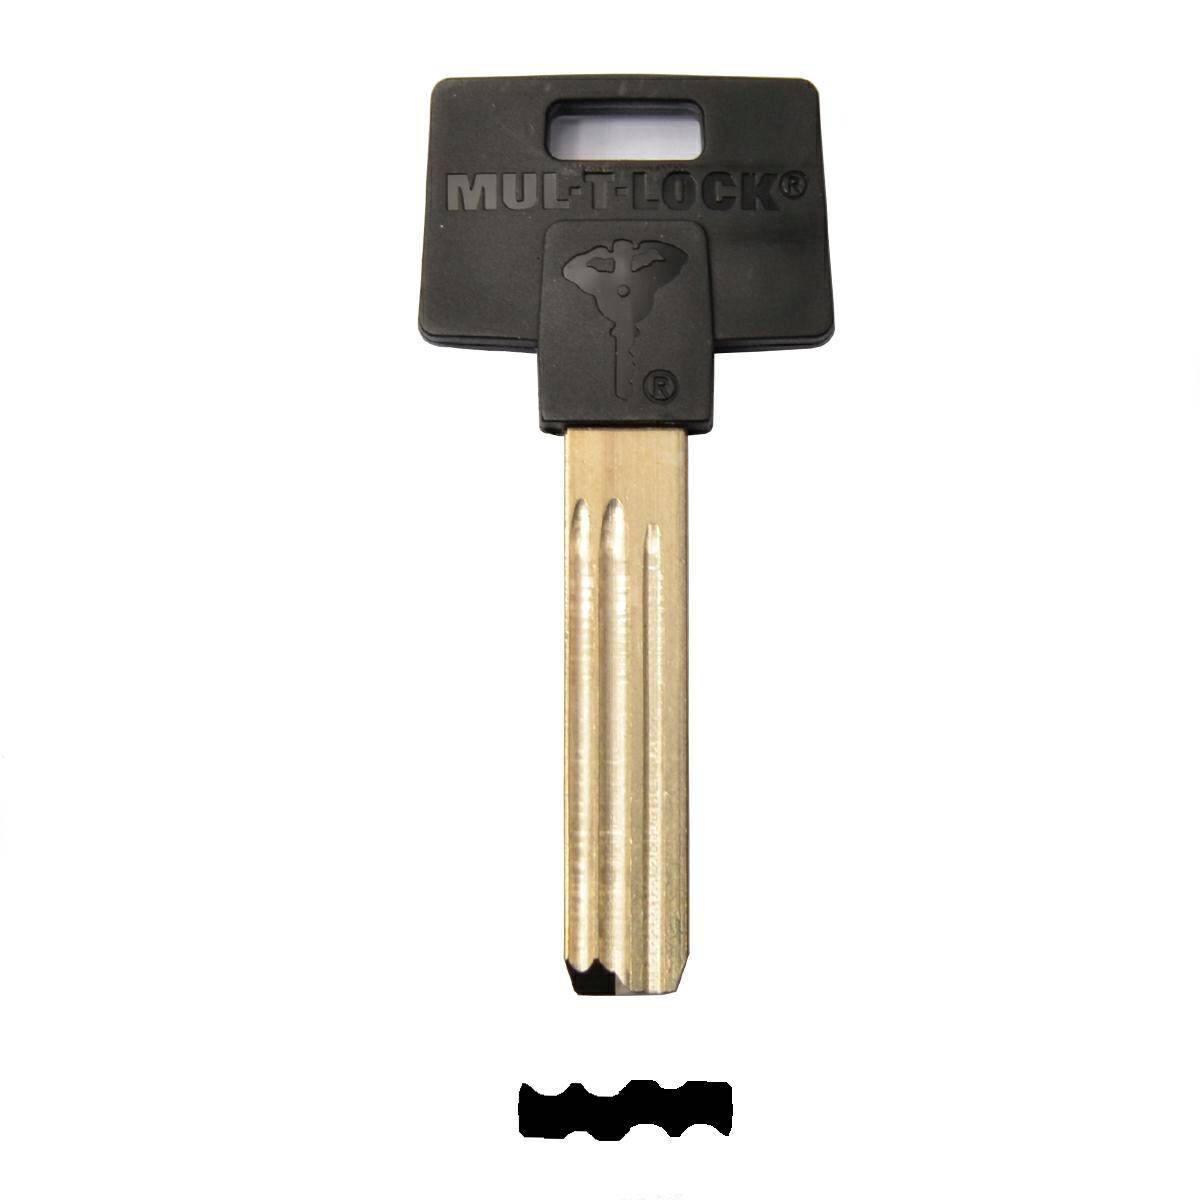 Key MUL-T-LOCK 008